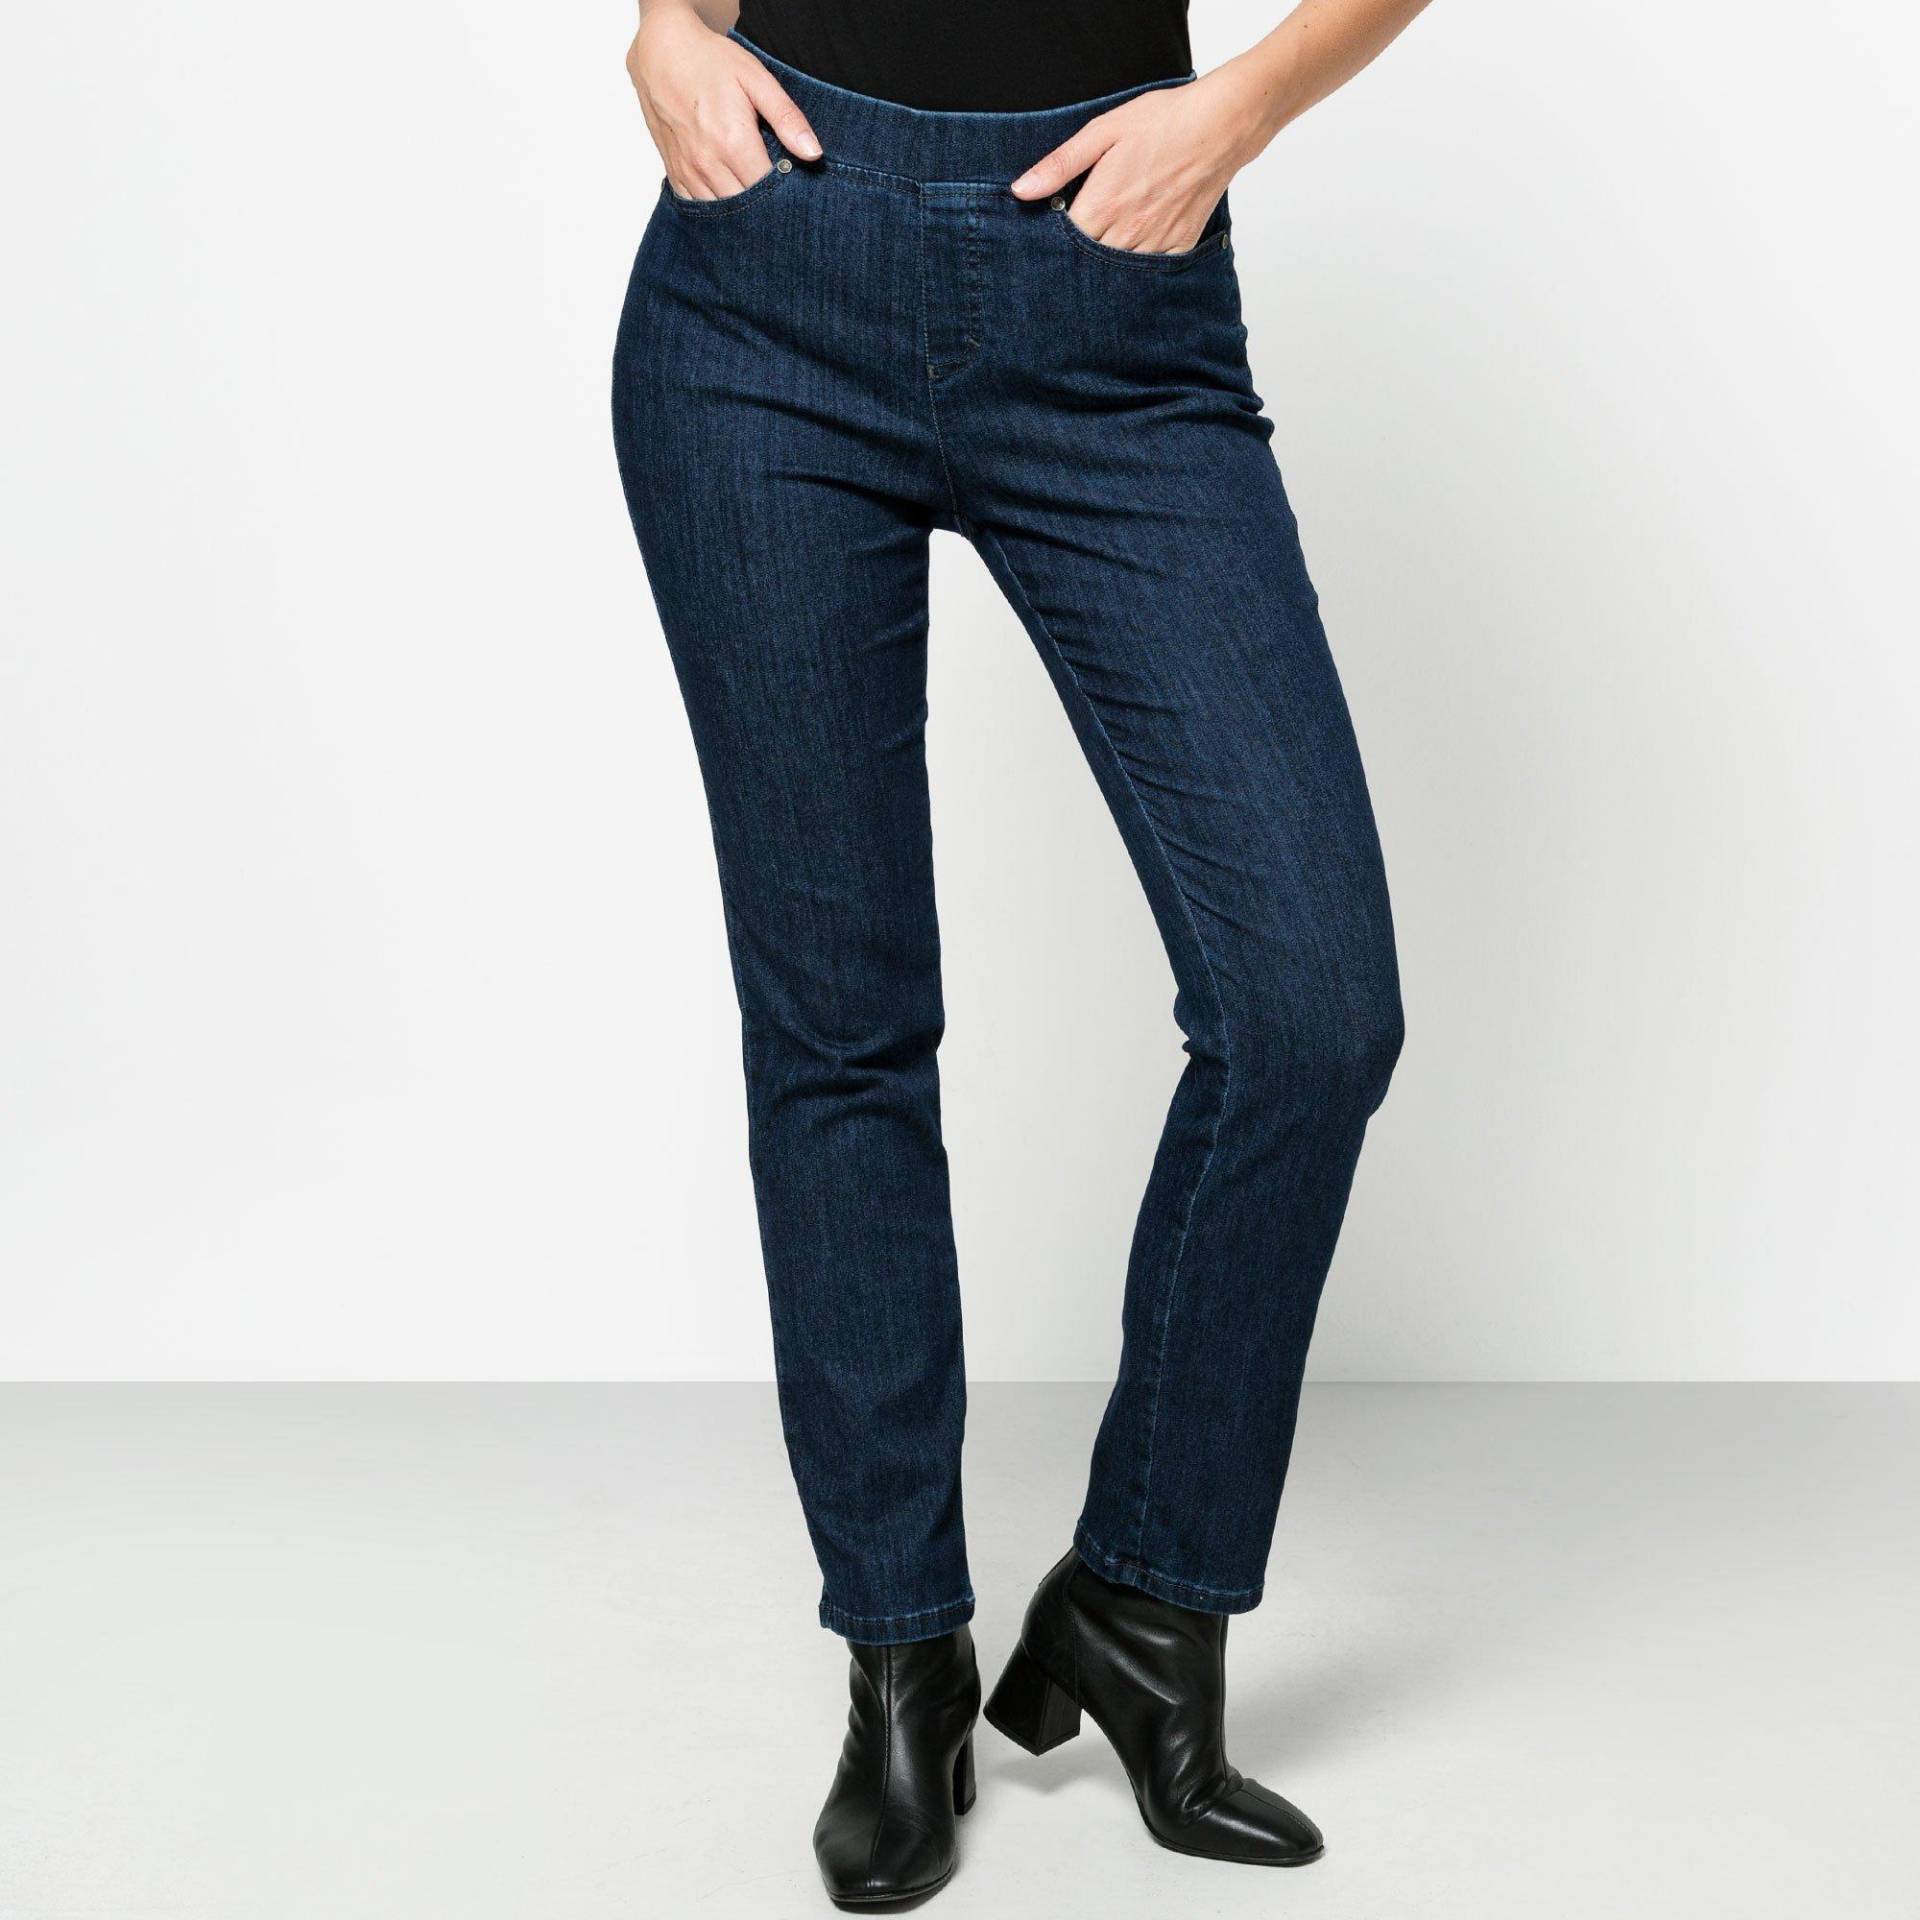 Jeans, Slim Fit Damen Blau Denim 46 von ANNA MONTANA